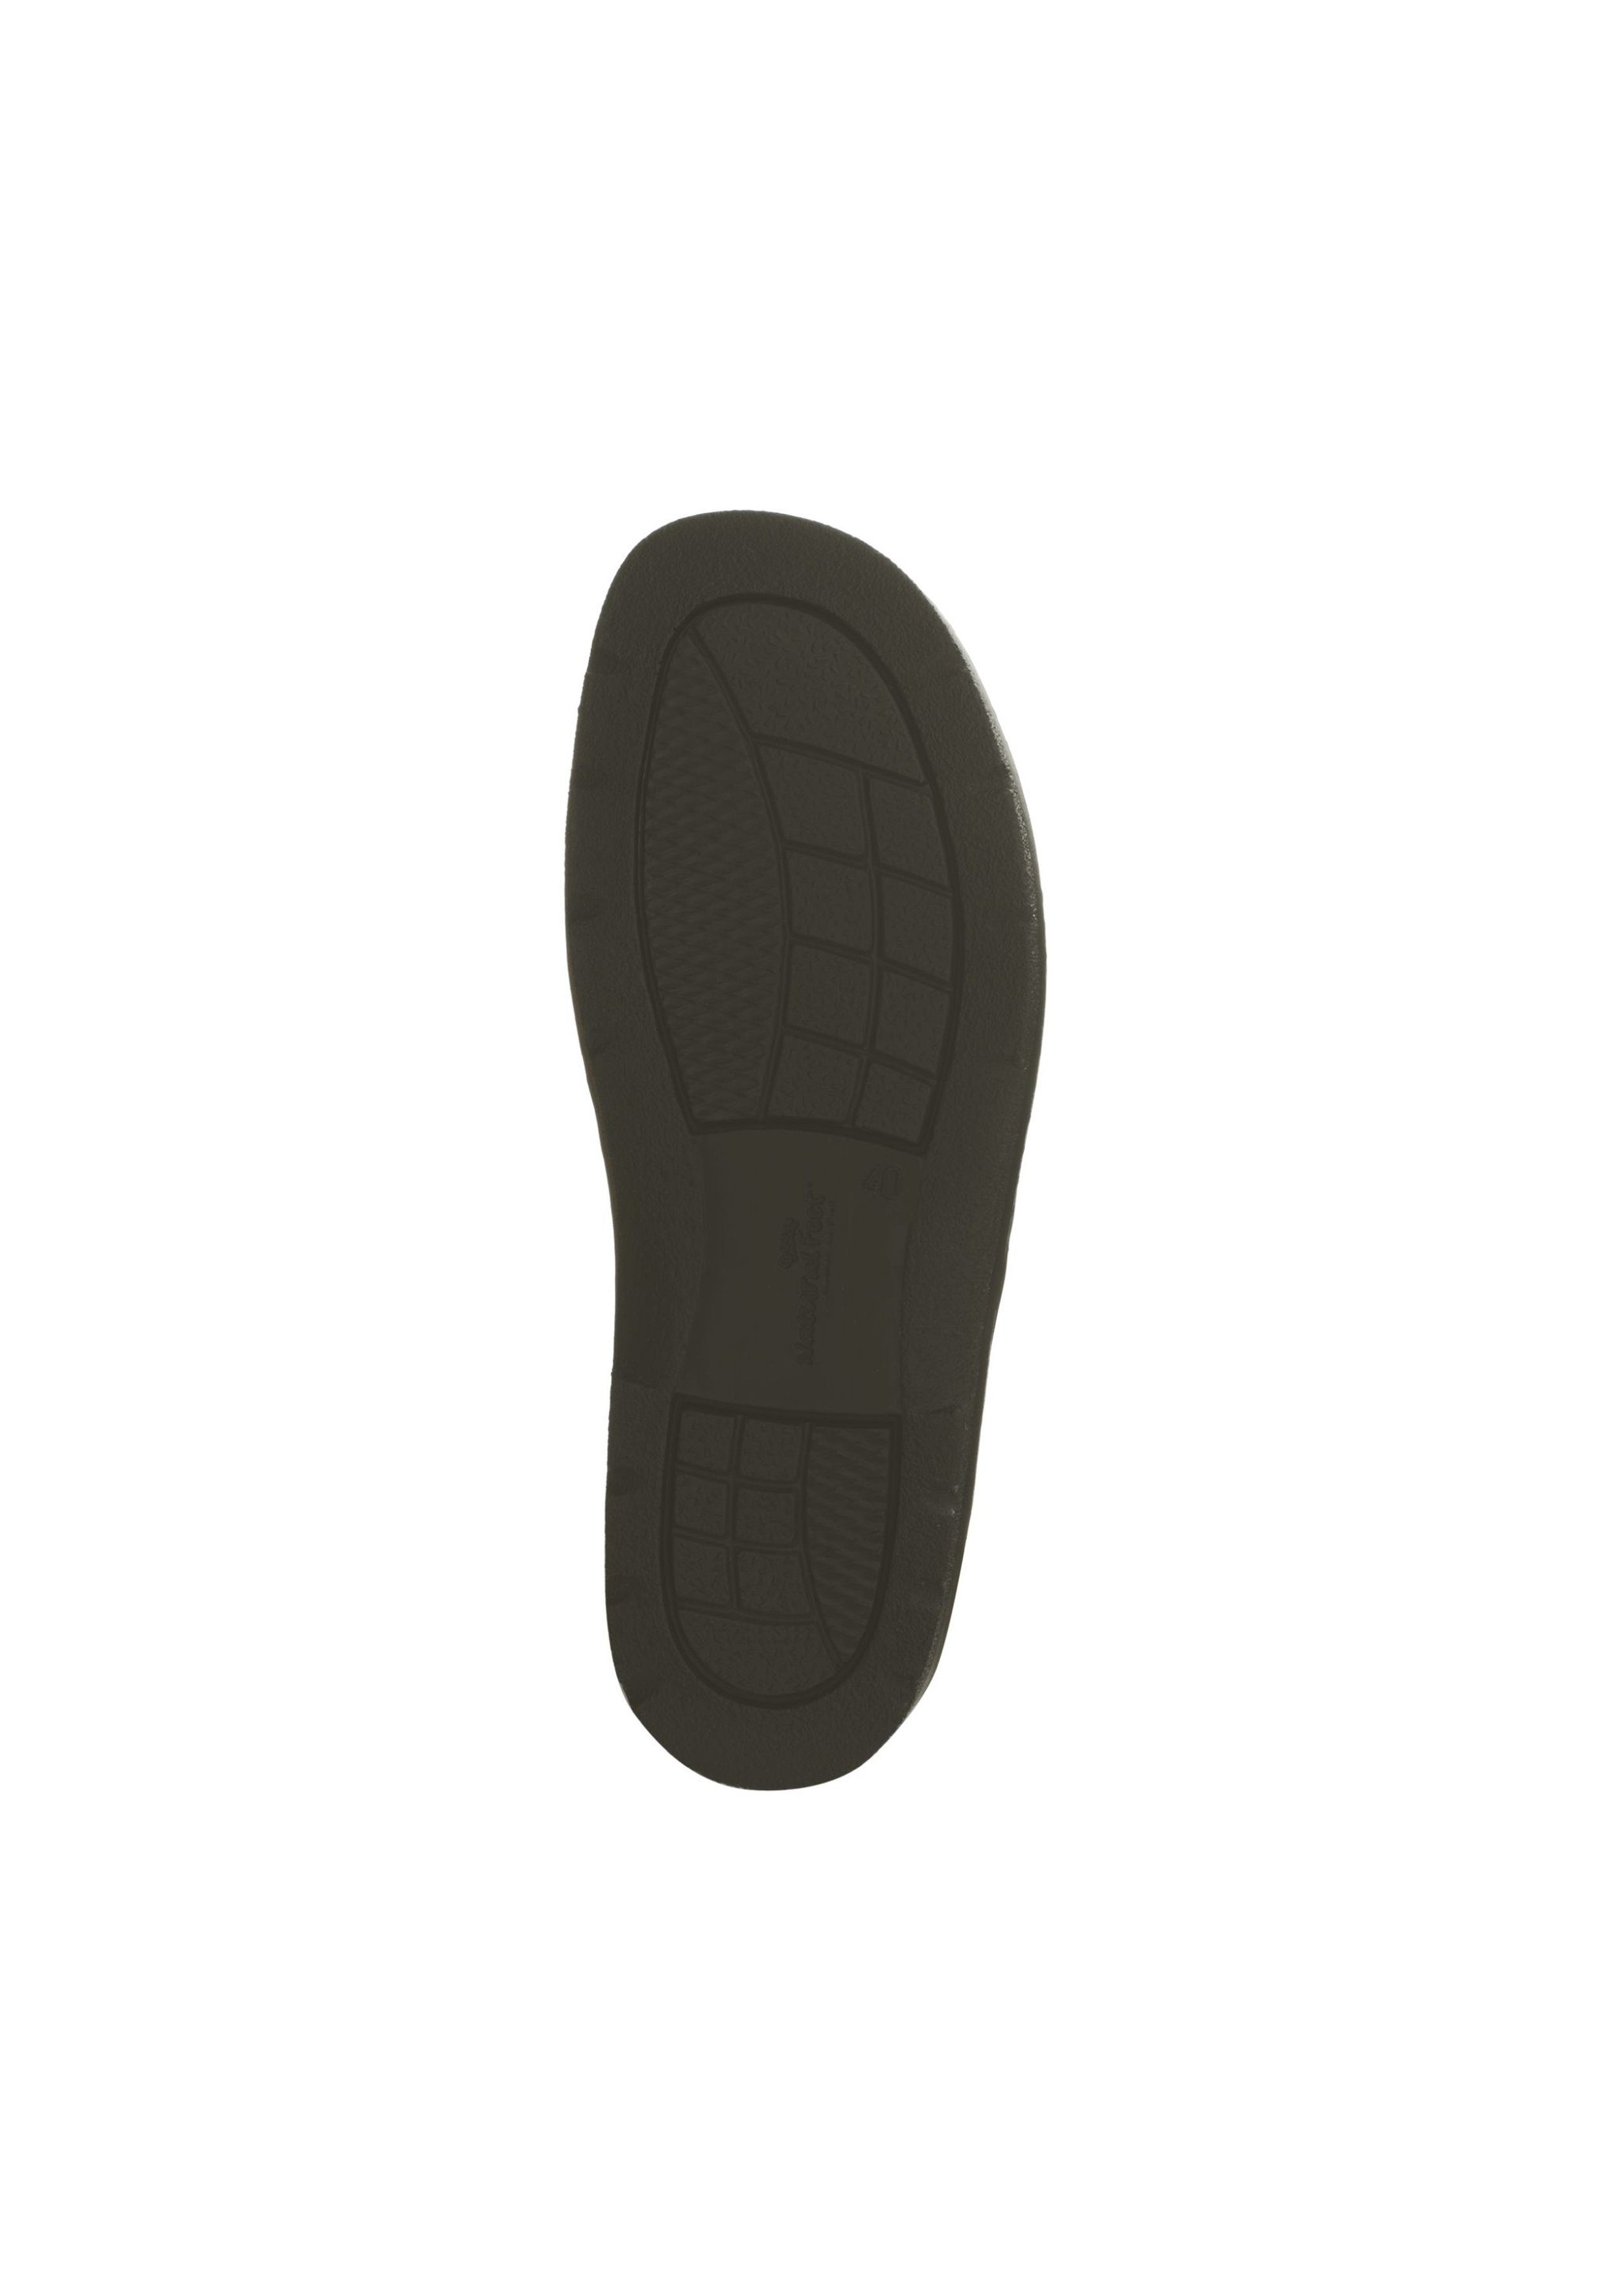 Feet mit Göteborg Klettschuh Natural schwarz Stretchmaterial